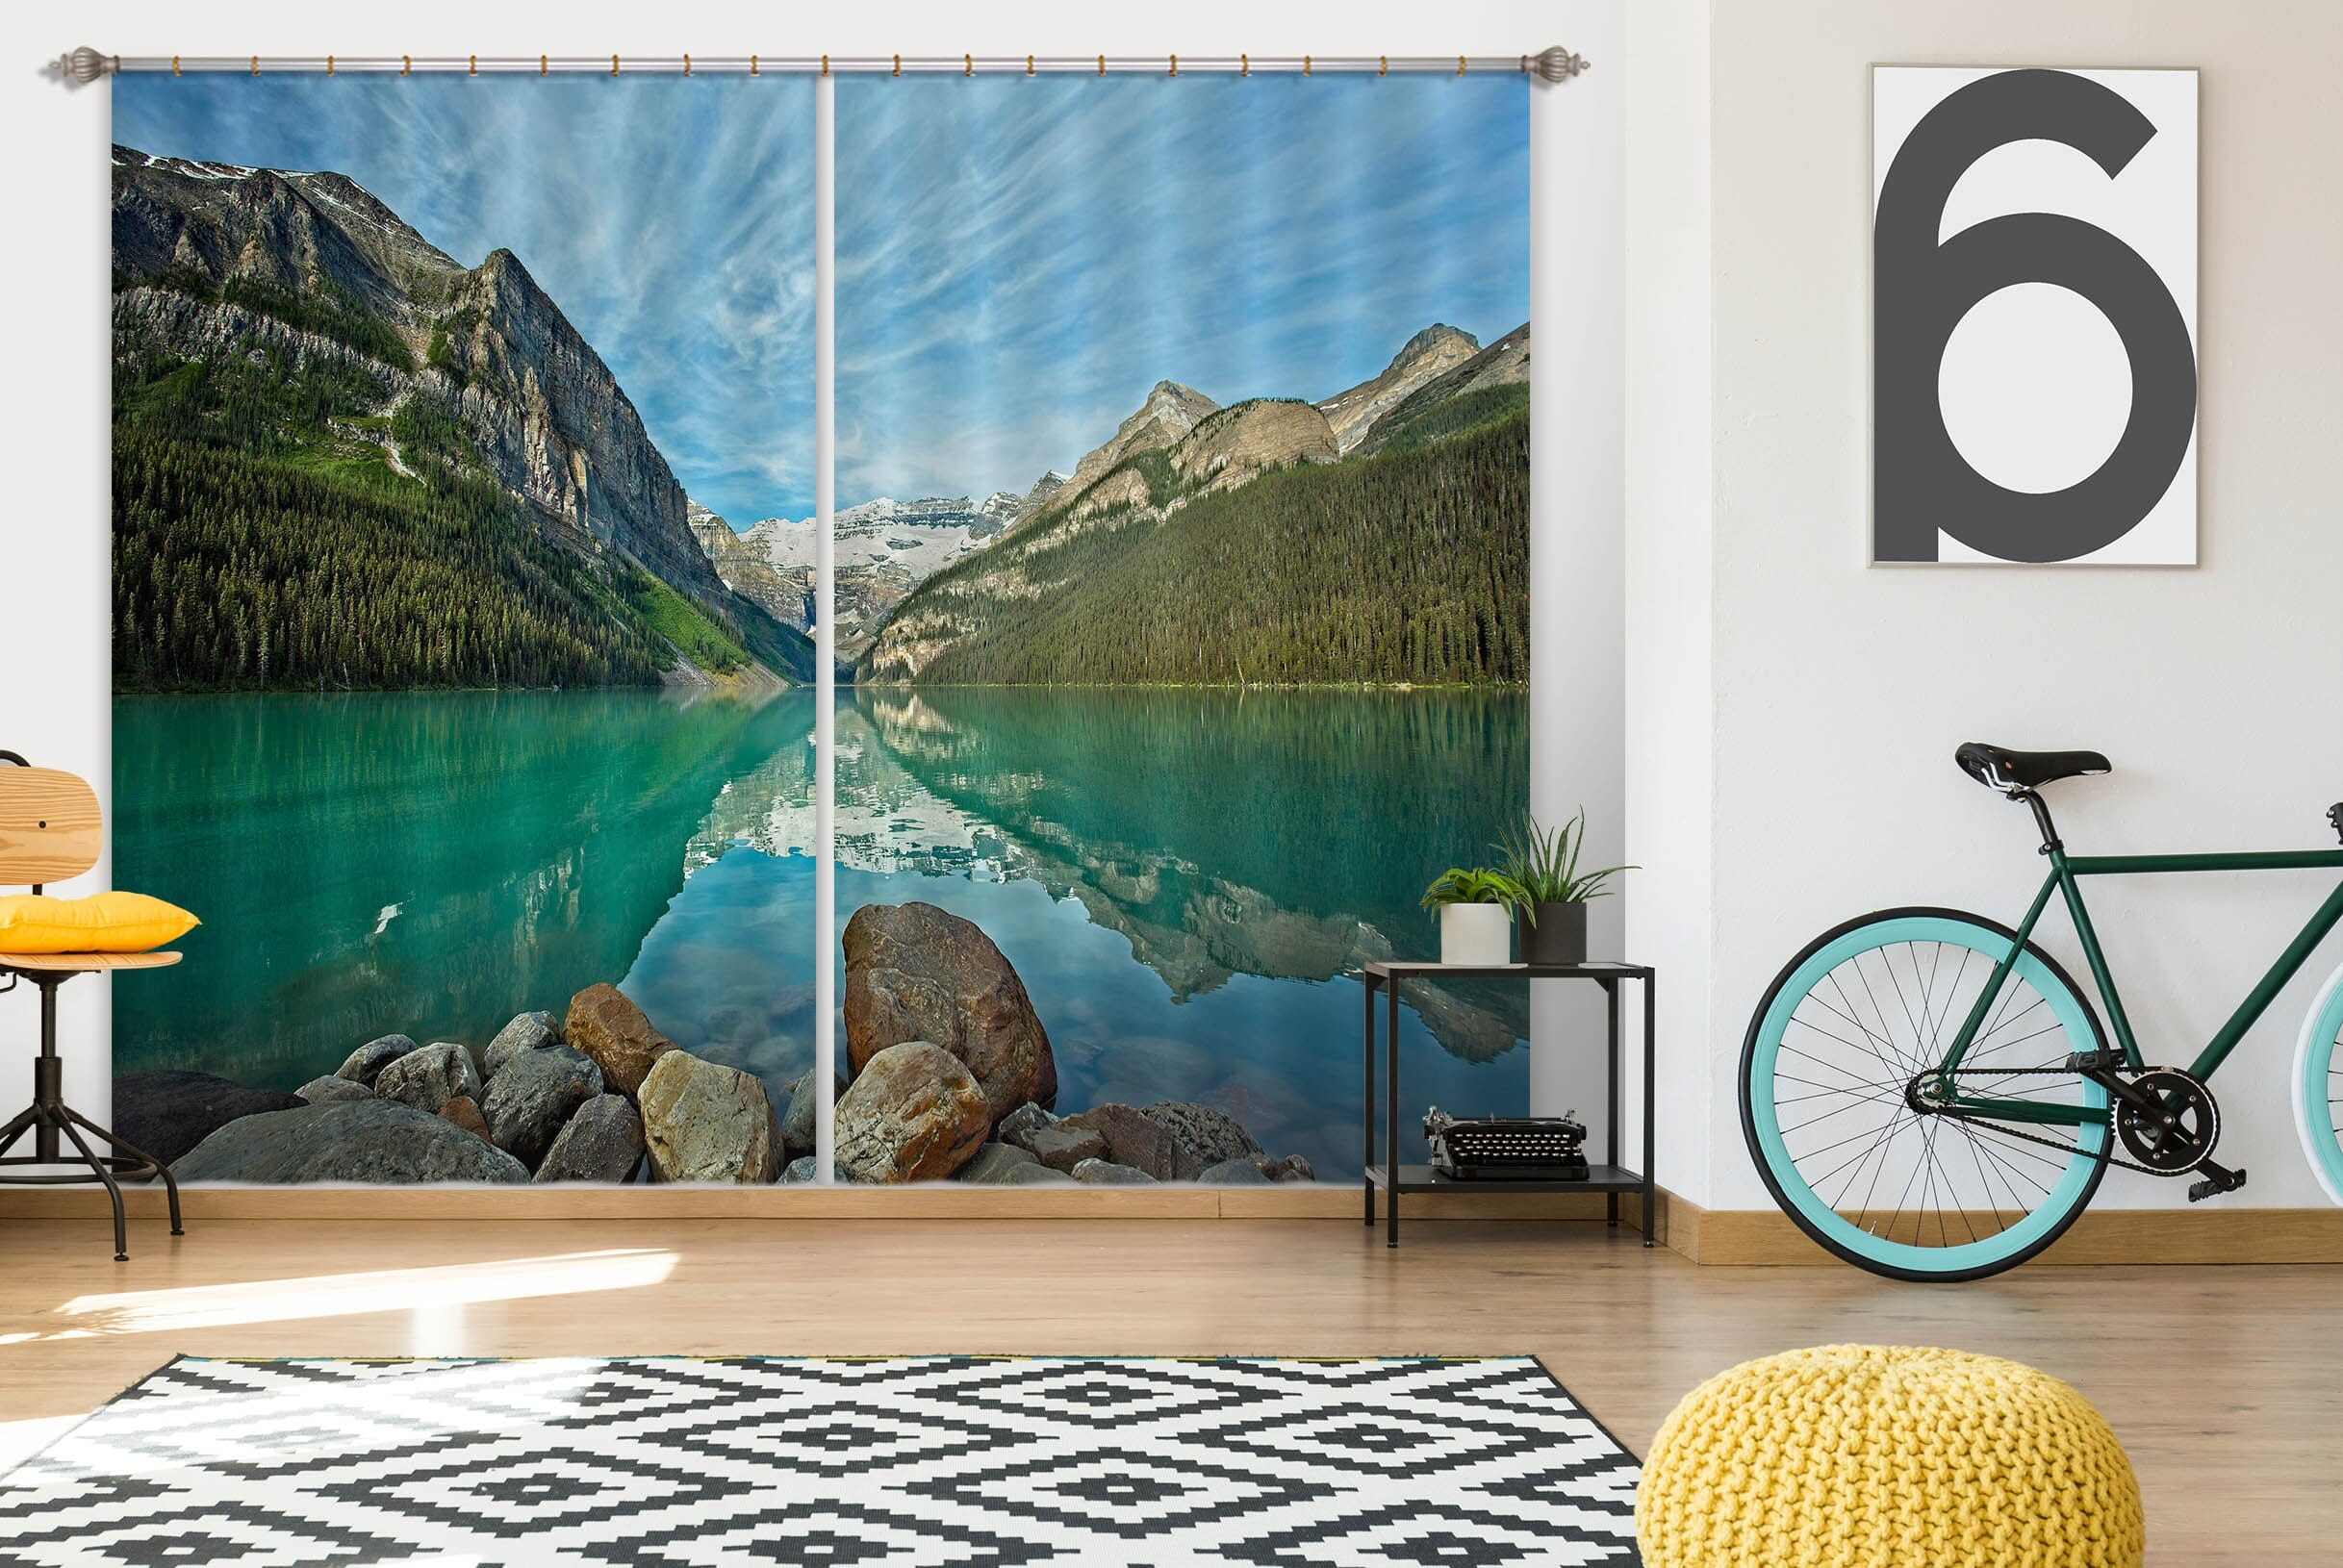 3D Clear Lake 055 Kathy Barefield Curtain Curtains Drapes Curtains AJ Creativity Home 